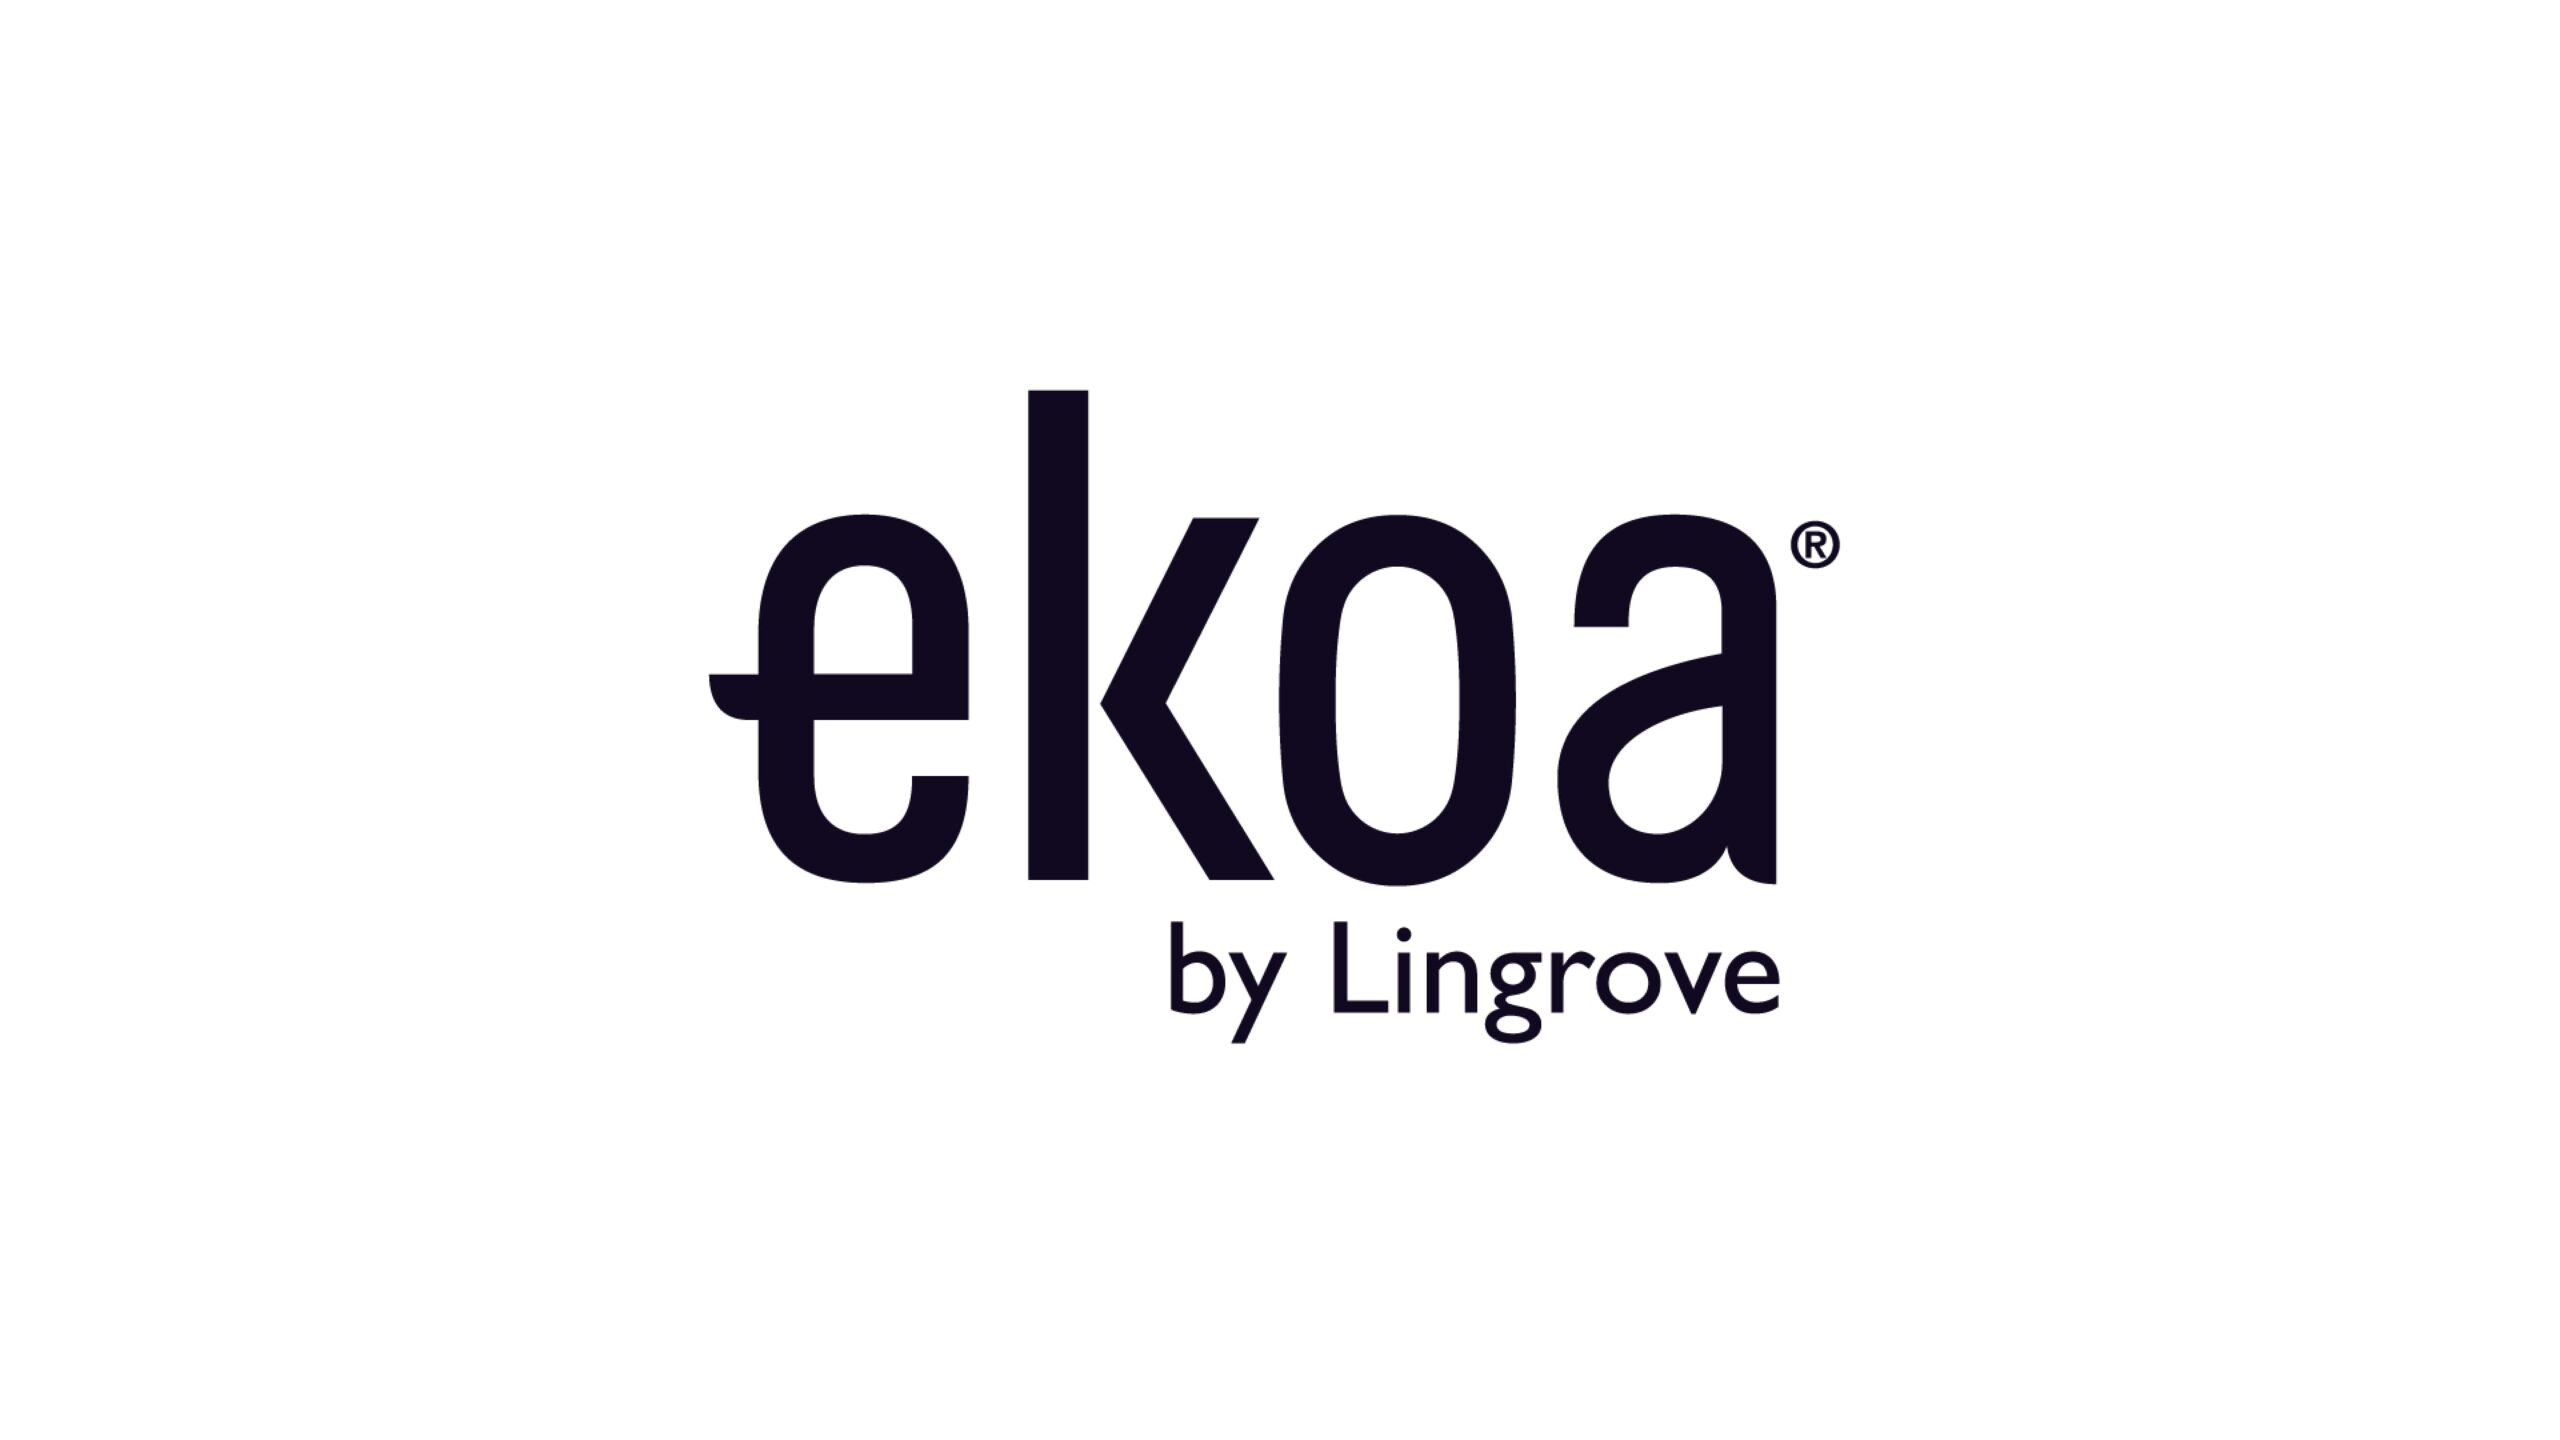 フラックスファイバーと植物由来の樹脂から作られた木製薄板の代替品「ekoa」を開発するLingrove、1000万ドルの資金調達